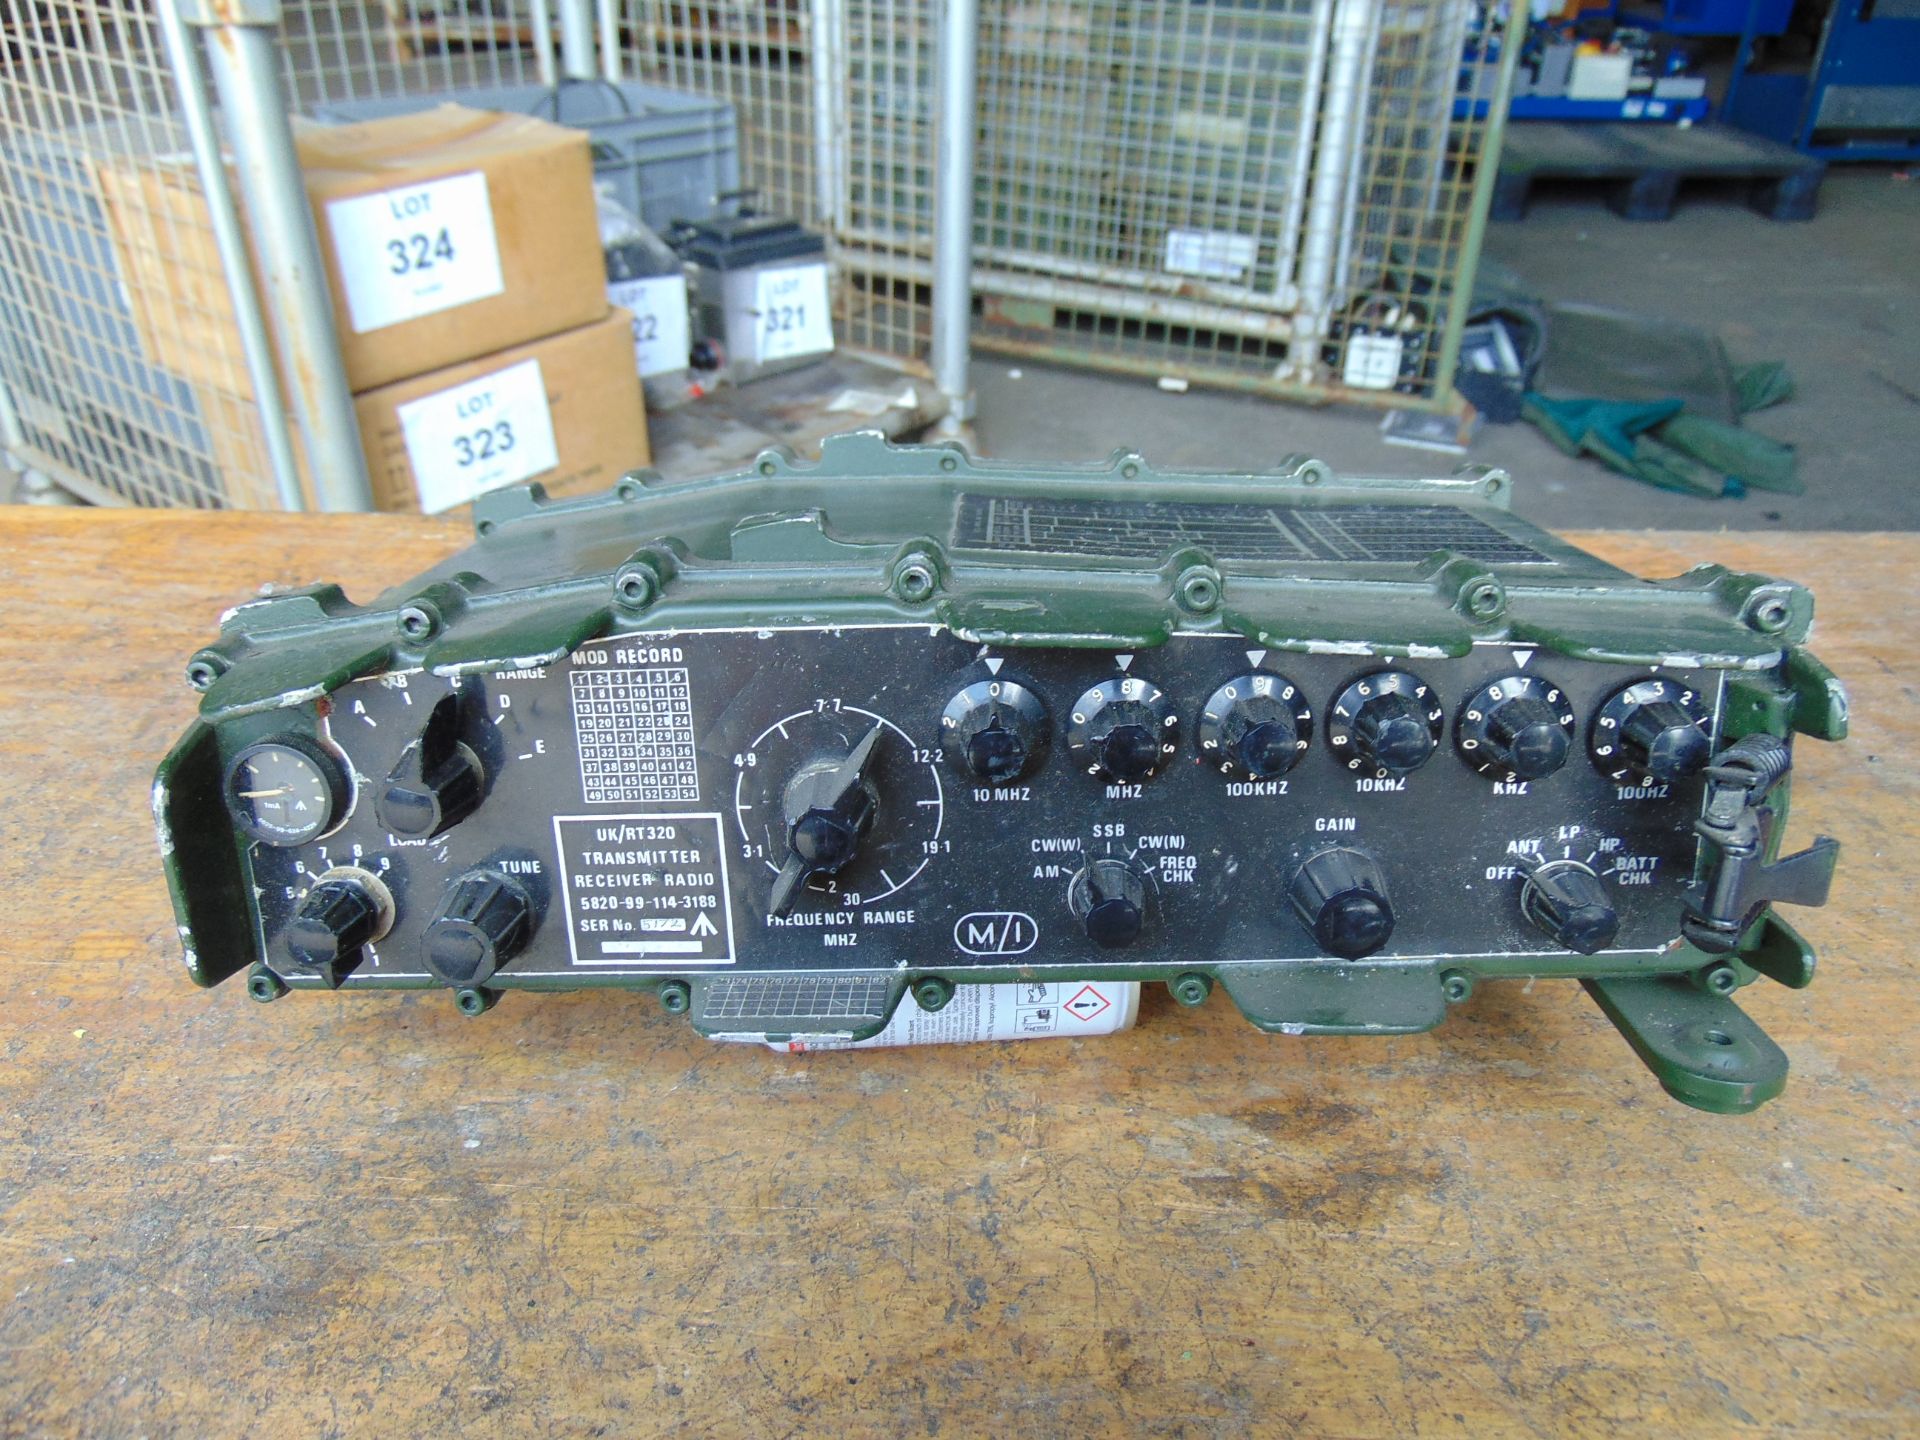 Clansman UK RT/320 HF British Army Transmitter Receiver